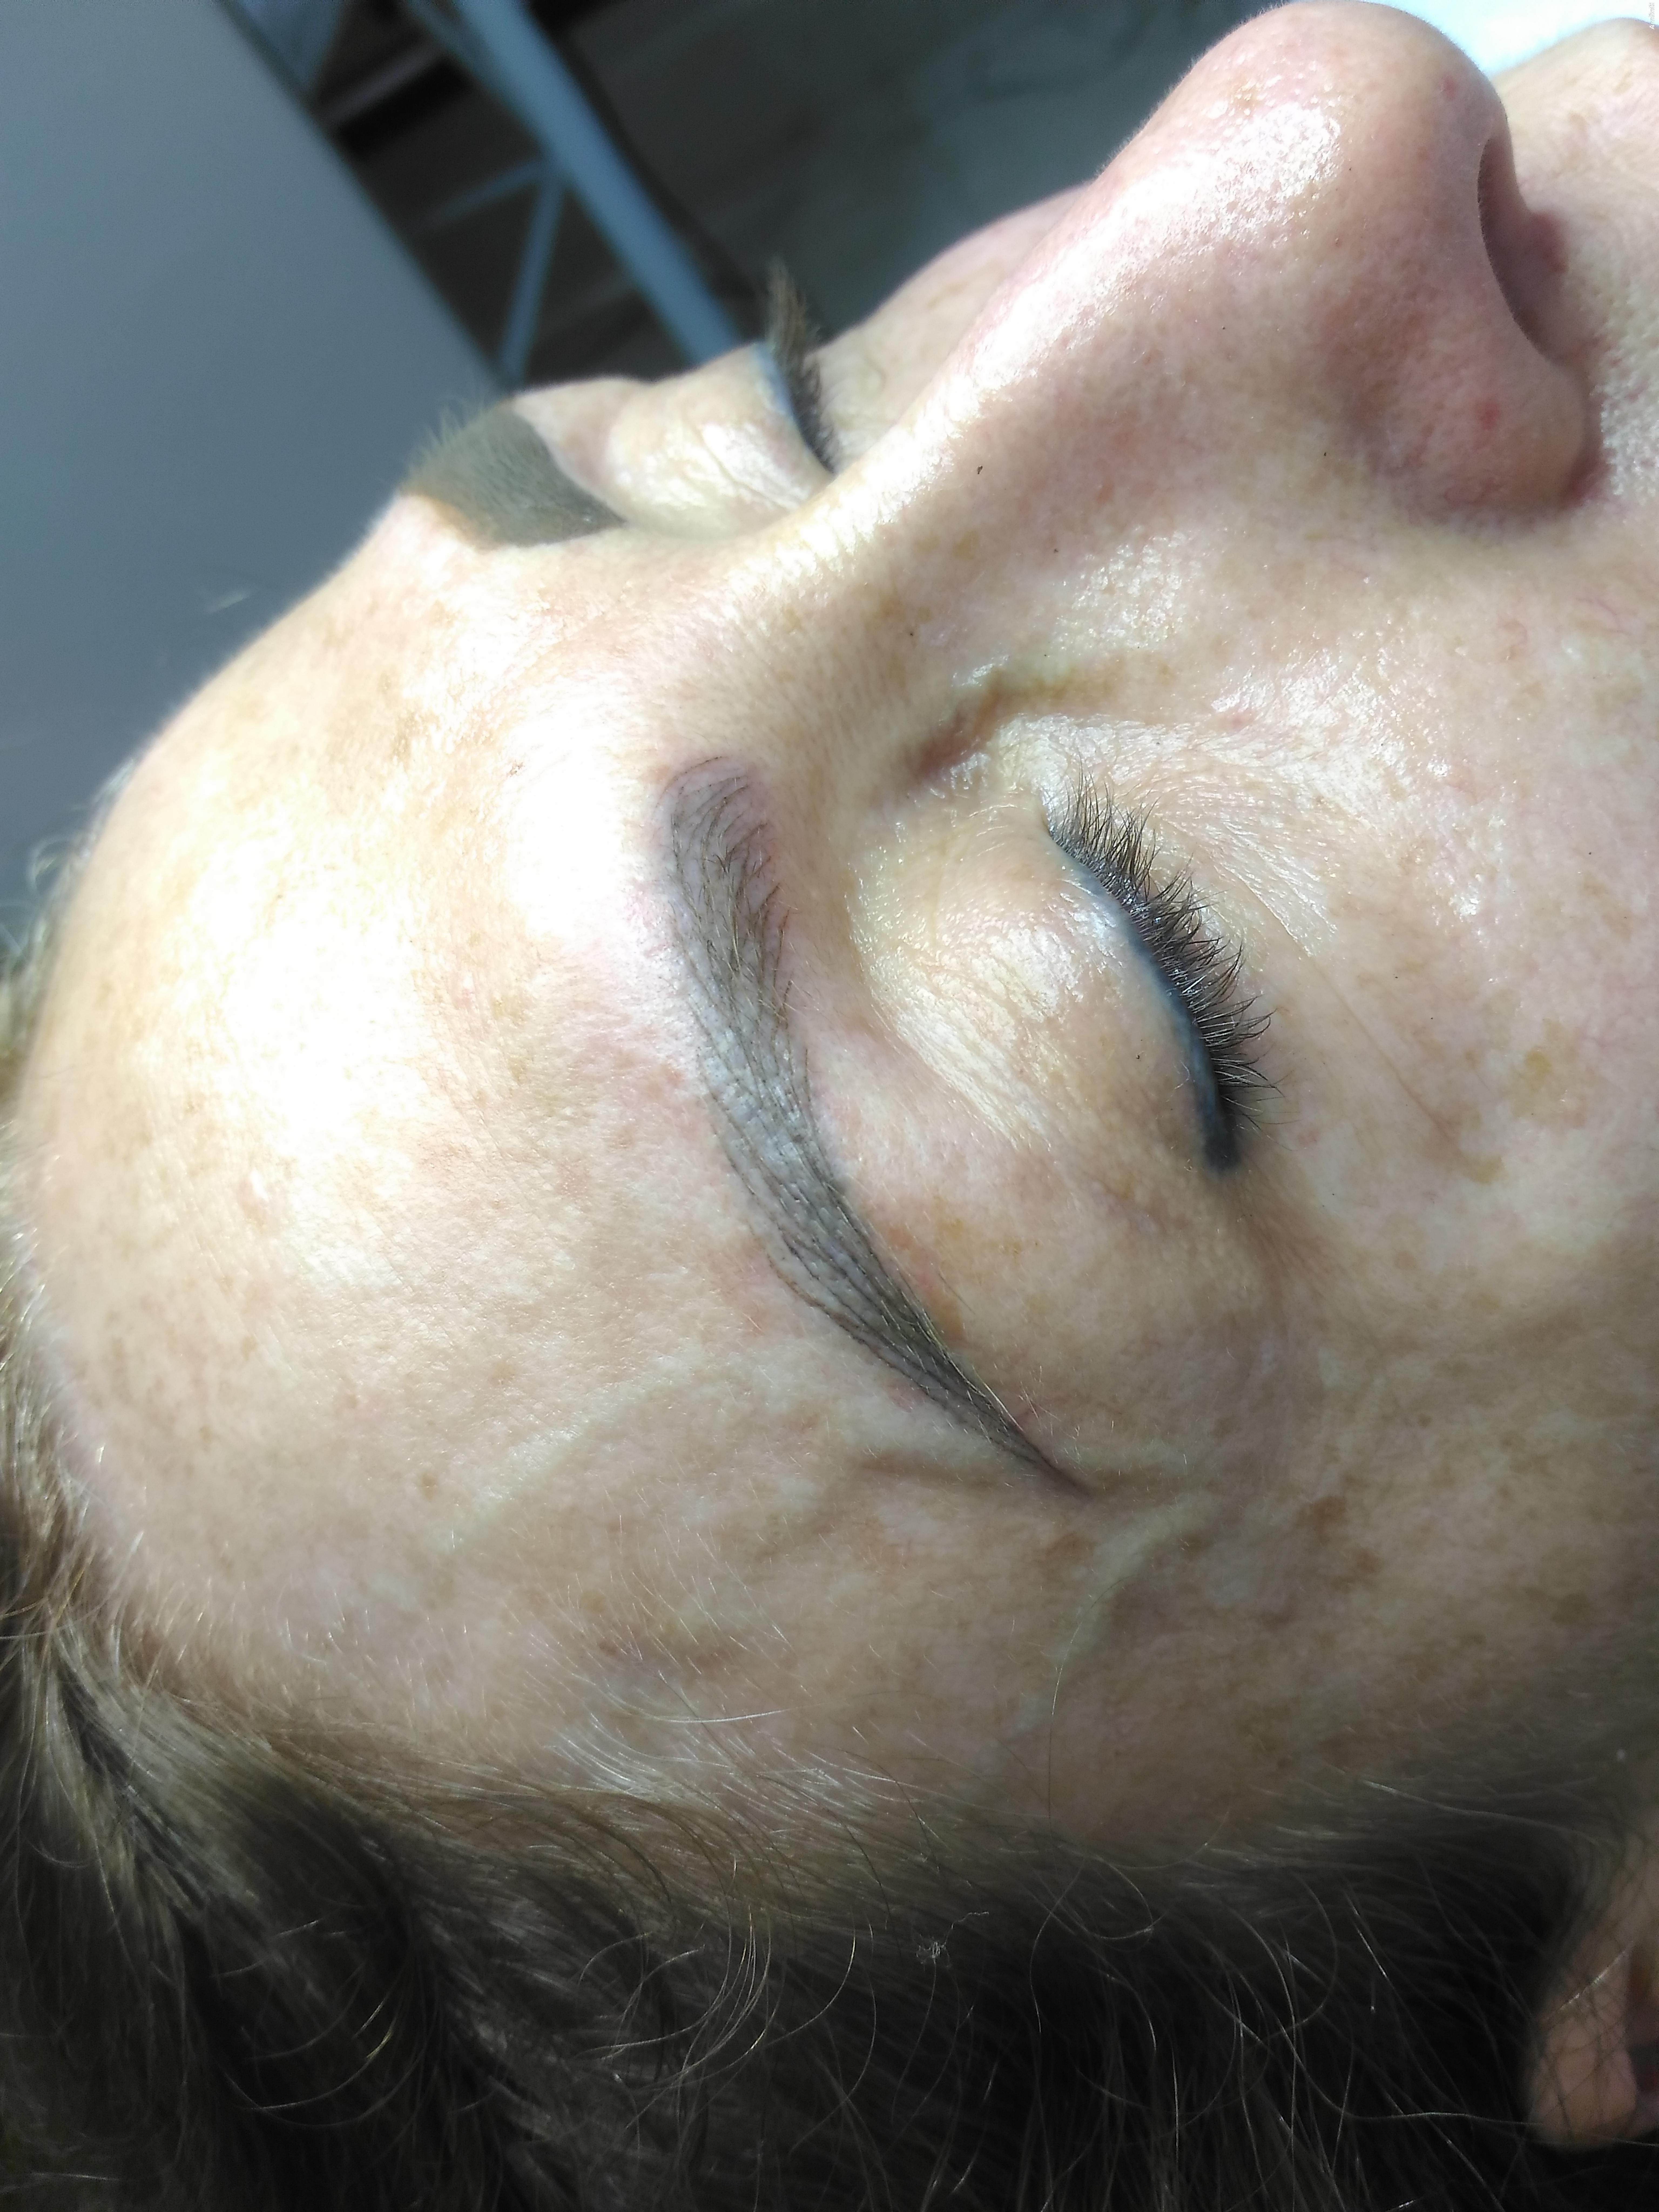  Cliente em pelos !Técnica em 3d realista  proporcionando o natural
 estética micropigmentador(a) depilador(a) designer de sobrancelhas